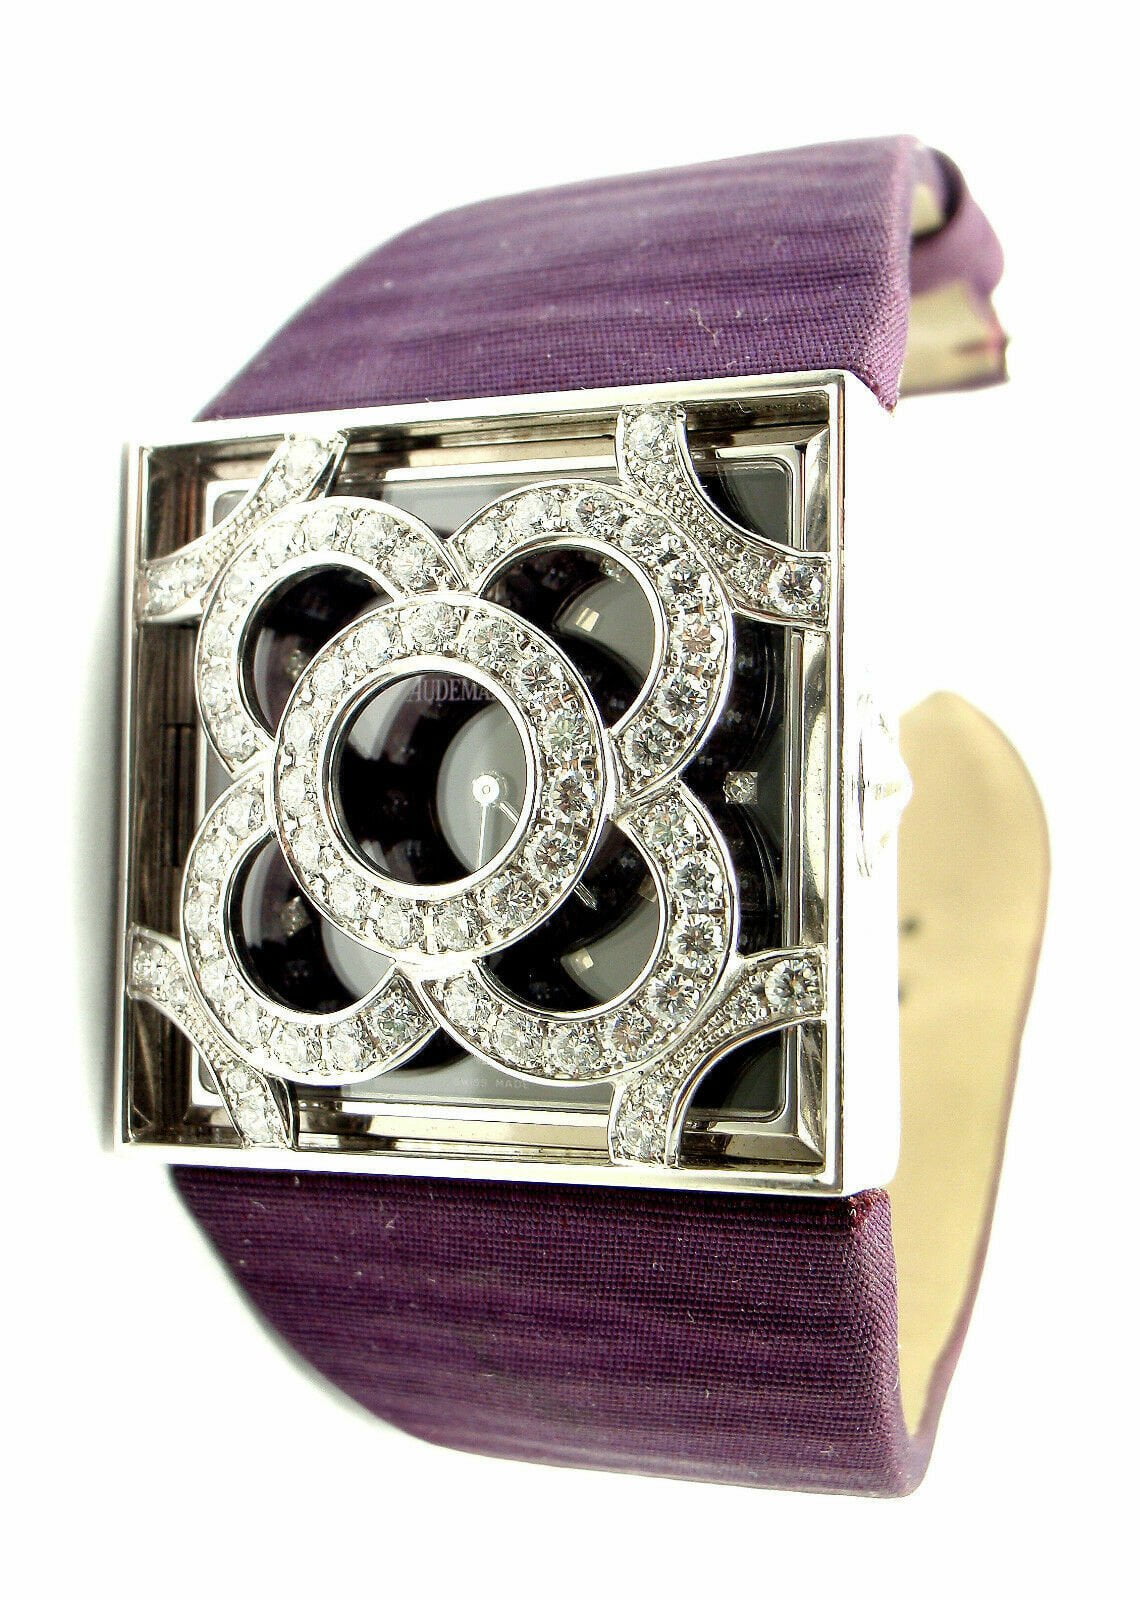 Audemars Piguet Jewelry & Watches:Watches, Parts & Accessories:Watches:Wristwatches Rare! Authentic Audemars Piguet Danae 18k White Gold Diamond Satin Ladies Watch